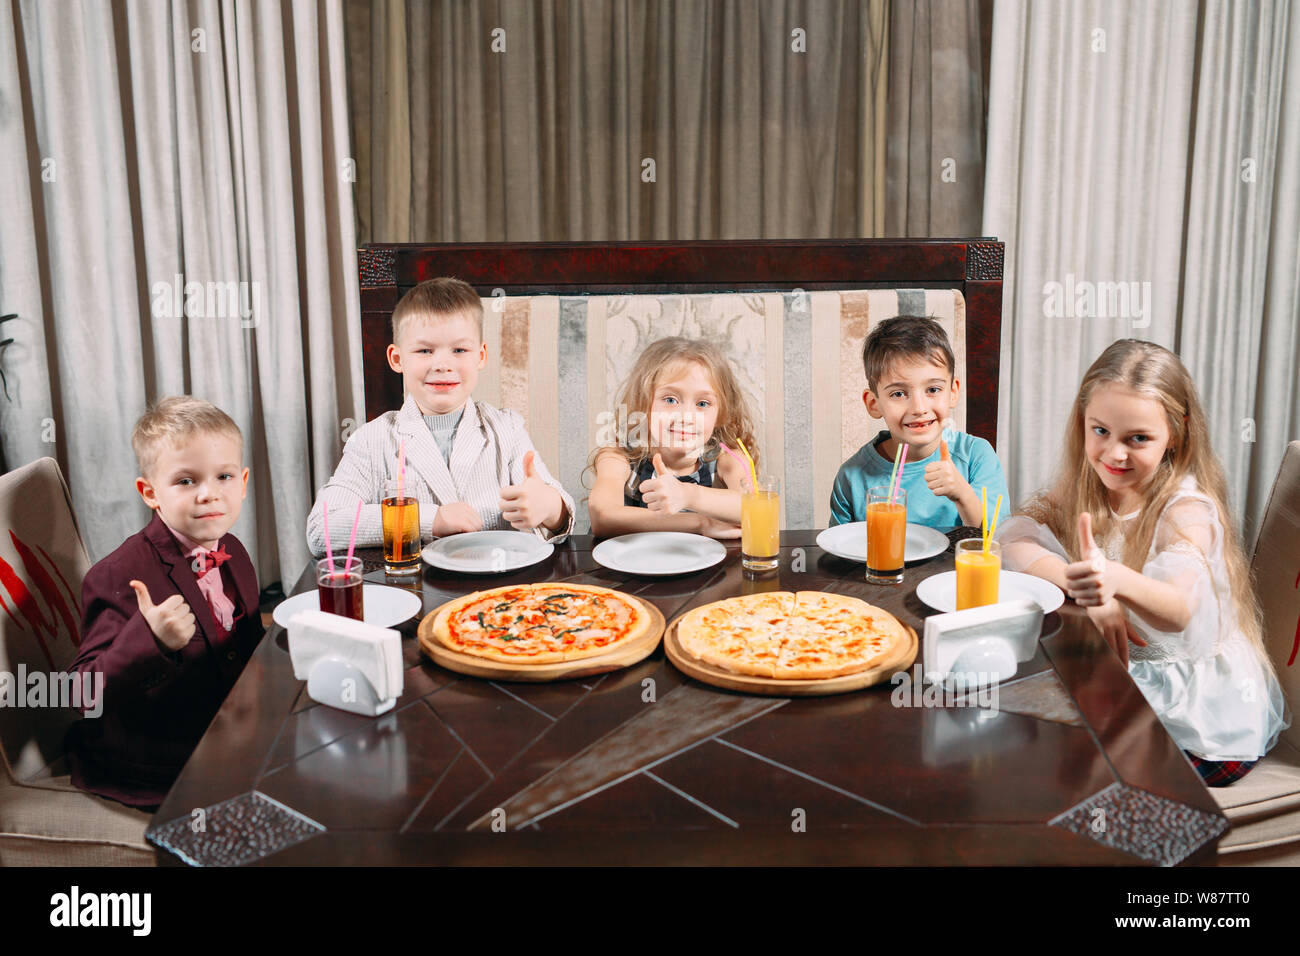 lovely children eat pizza in the restaurant Stock Photo